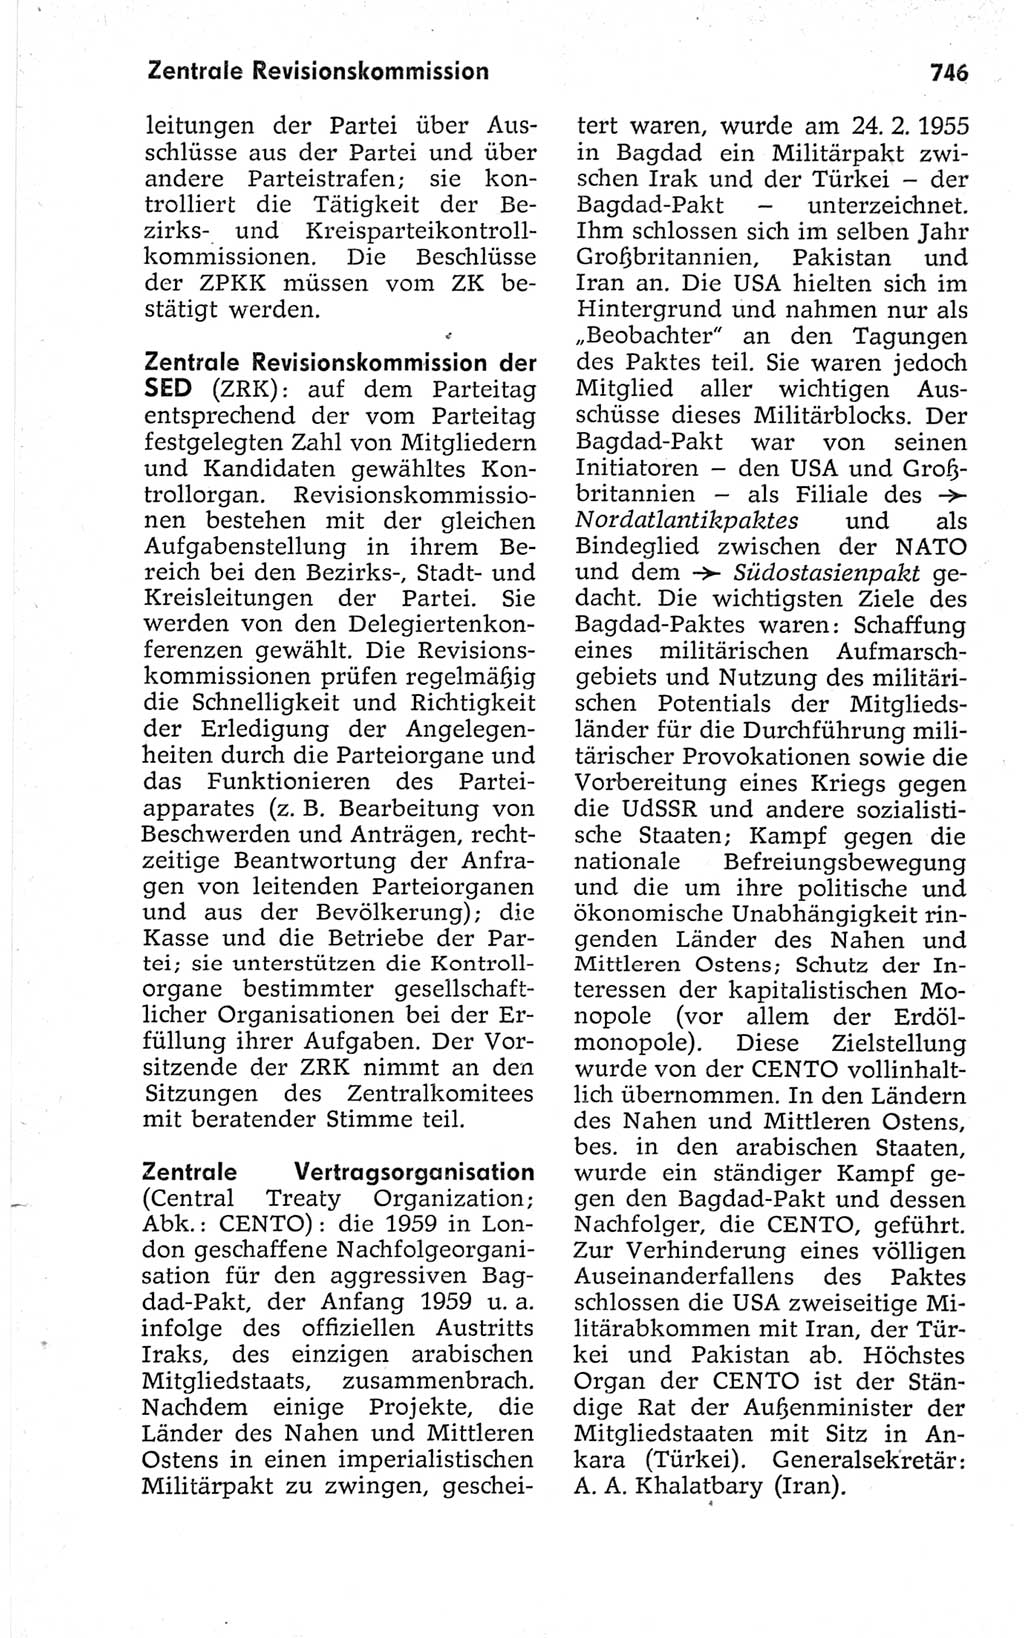 Kleines politisches Wörterbuch [Deutsche Demokratische Republik (DDR)] 1967, Seite 746 (Kl. pol. Wb. DDR 1967, S. 746)